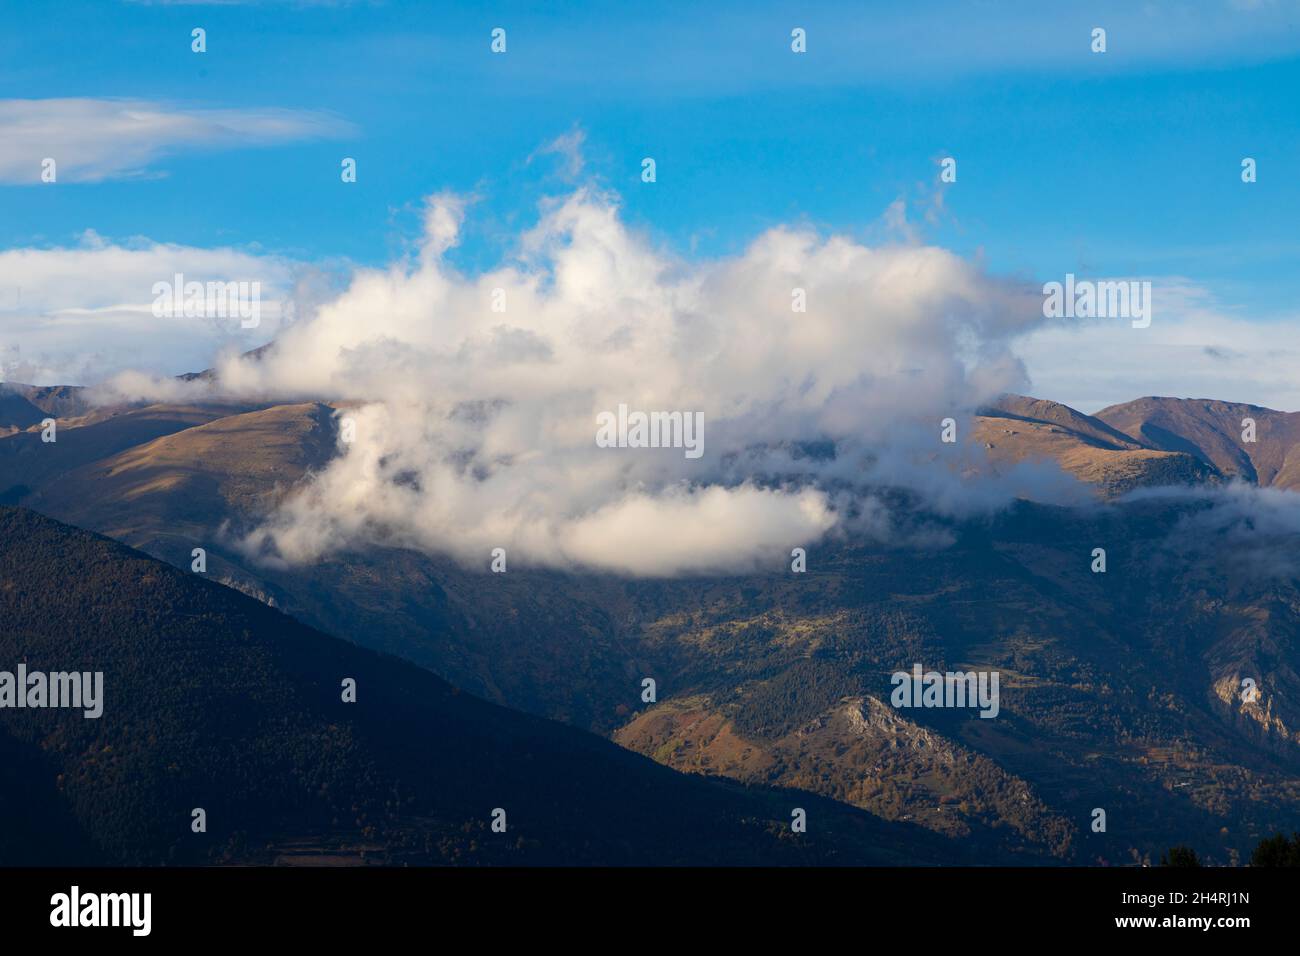 Sommet de la mouintain de Puigmal (pic) recouvert de nuages.Queralbs, Vall de Núria (vallée de Nuria) El Ripollès, Gérone, Catalogne, Espagne.Europe. Banque D'Images